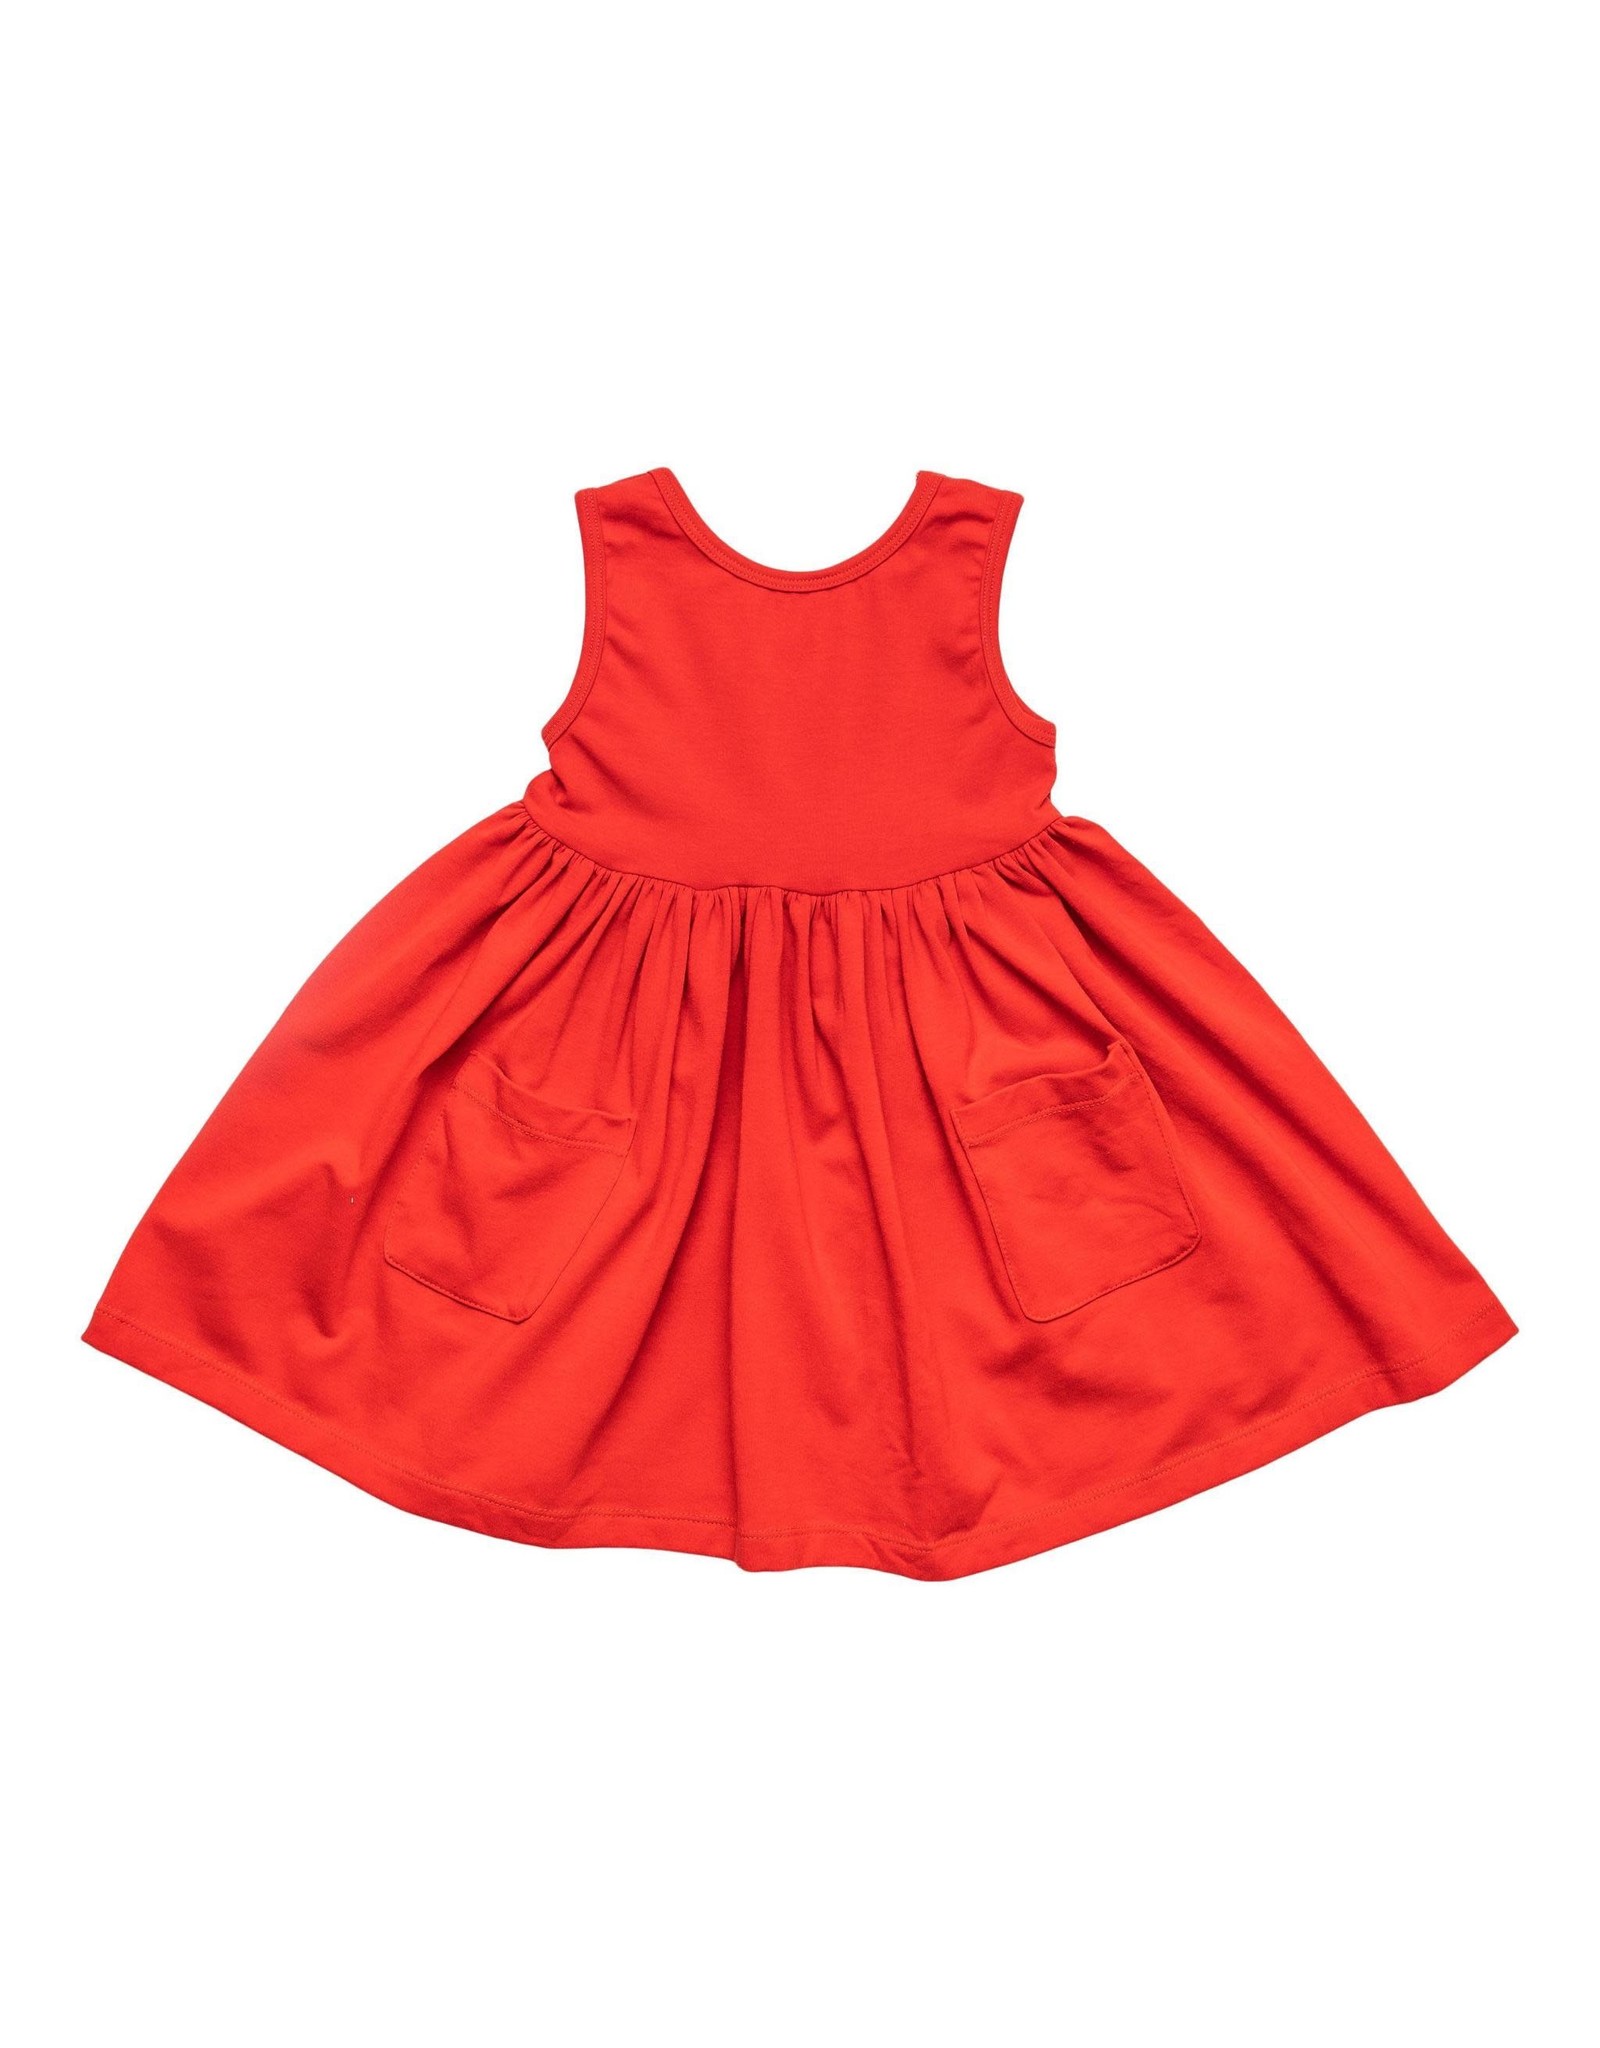 Mila & Rose Mila & Rose- Red Tank Twirl Dress